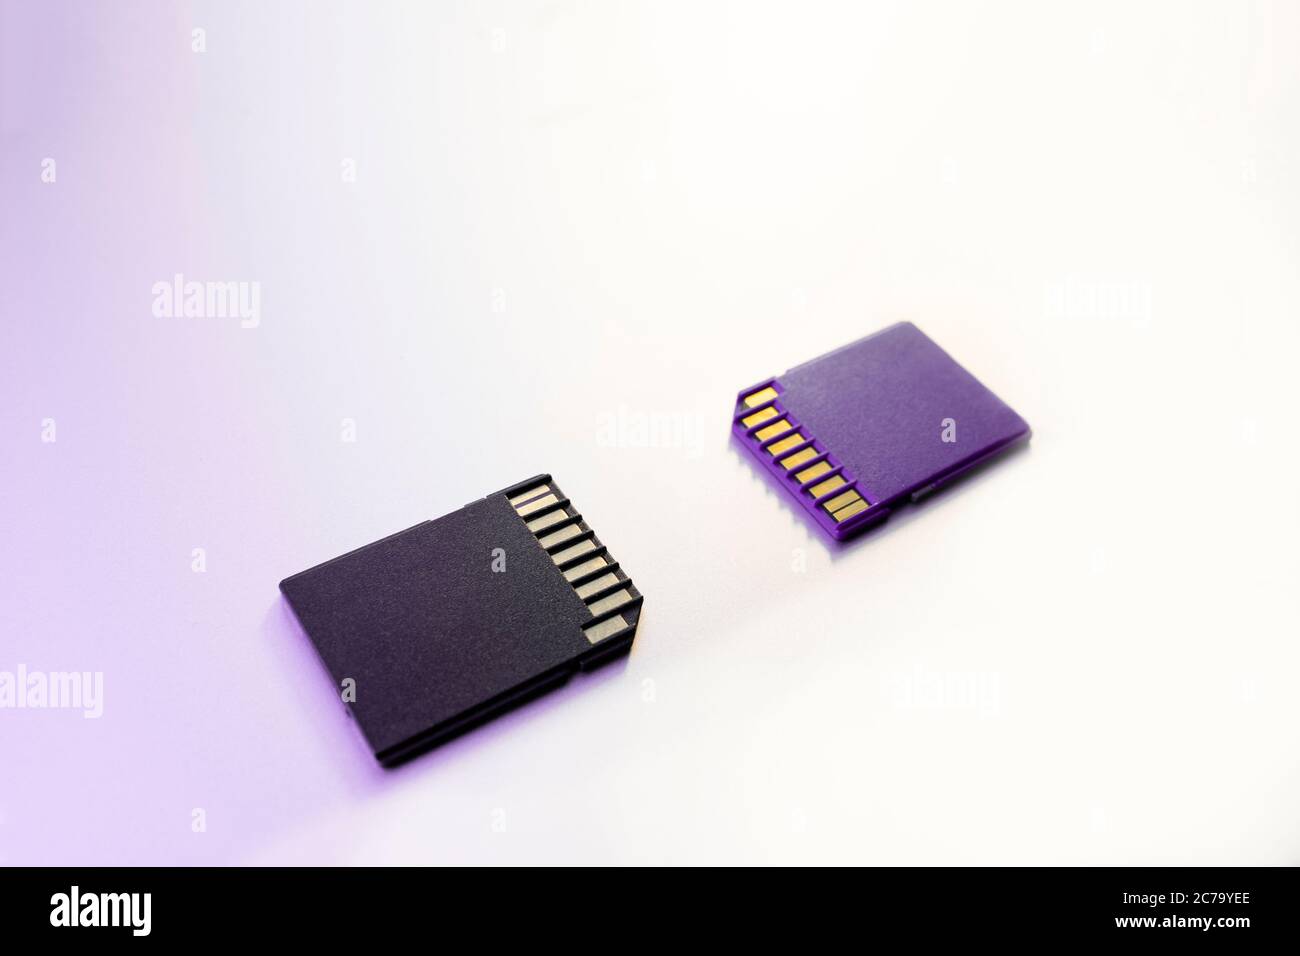 Deux cartes mémoire SD pour appareils photo numériques, mise au point sélective, filtre violet Banque D'Images